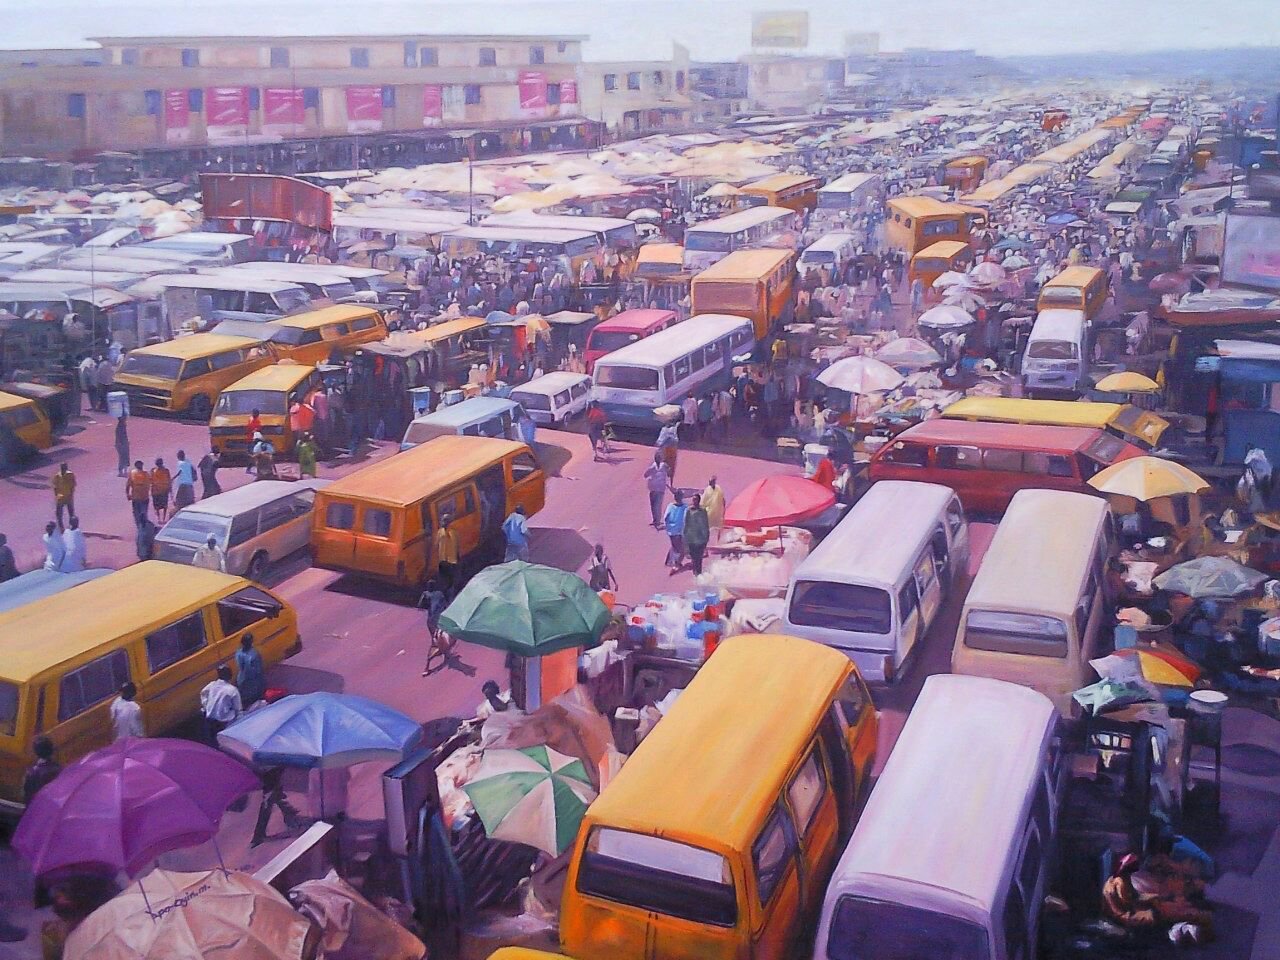 A bustling day in Lagos - Apooyin Mufutau